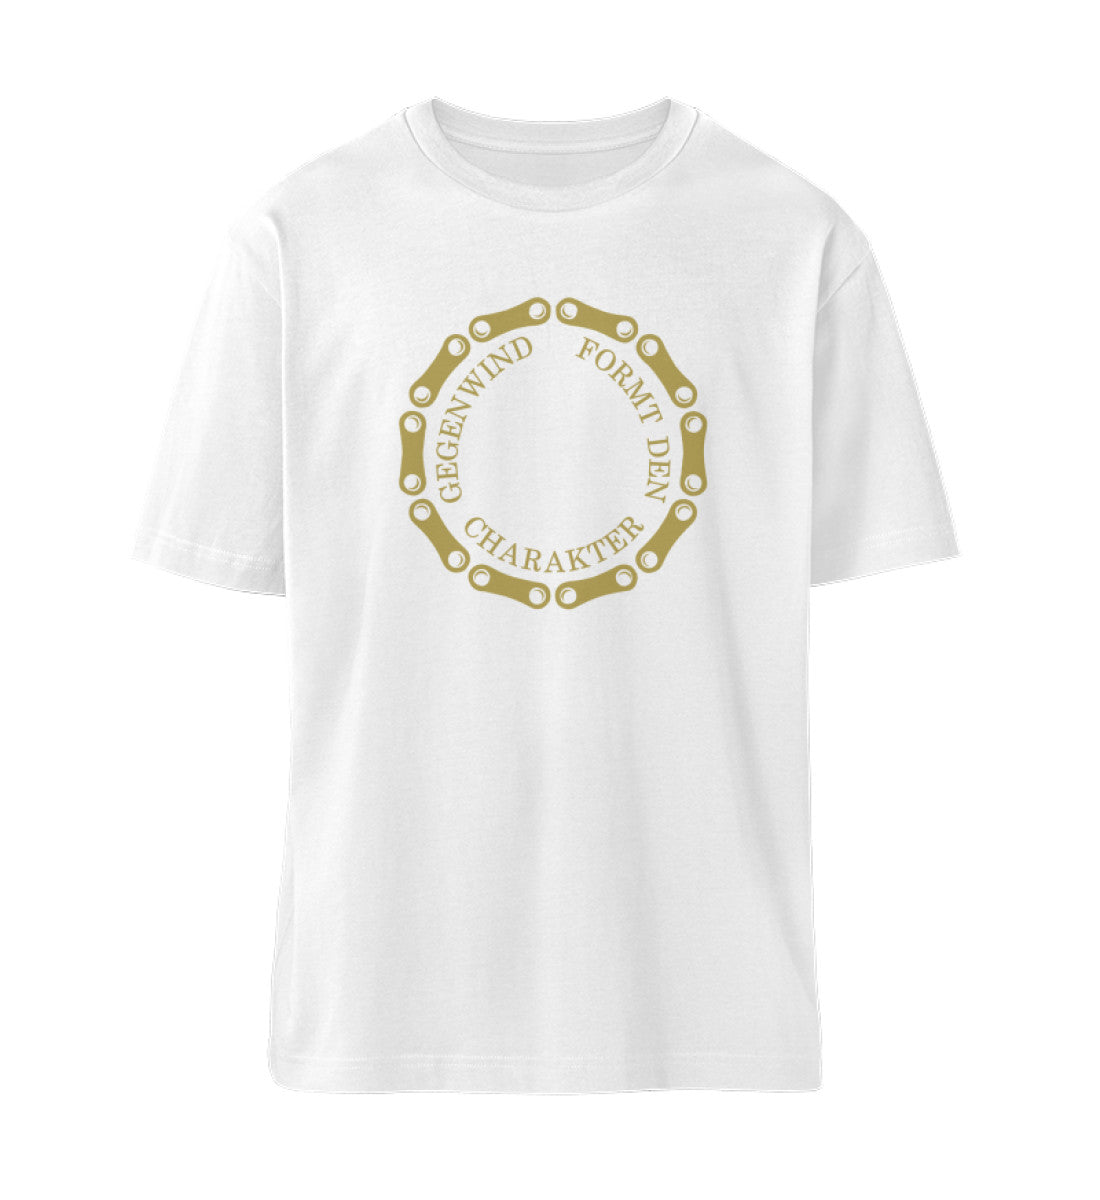 Weißes T-Shirt Unisex Relaxed Fit für Frauen und Männer bedruckt mit dem Design der Roger Rockawoo Clothing Kollektion Mountainbike Freeride Downhill Gegenwind formt den Charakter